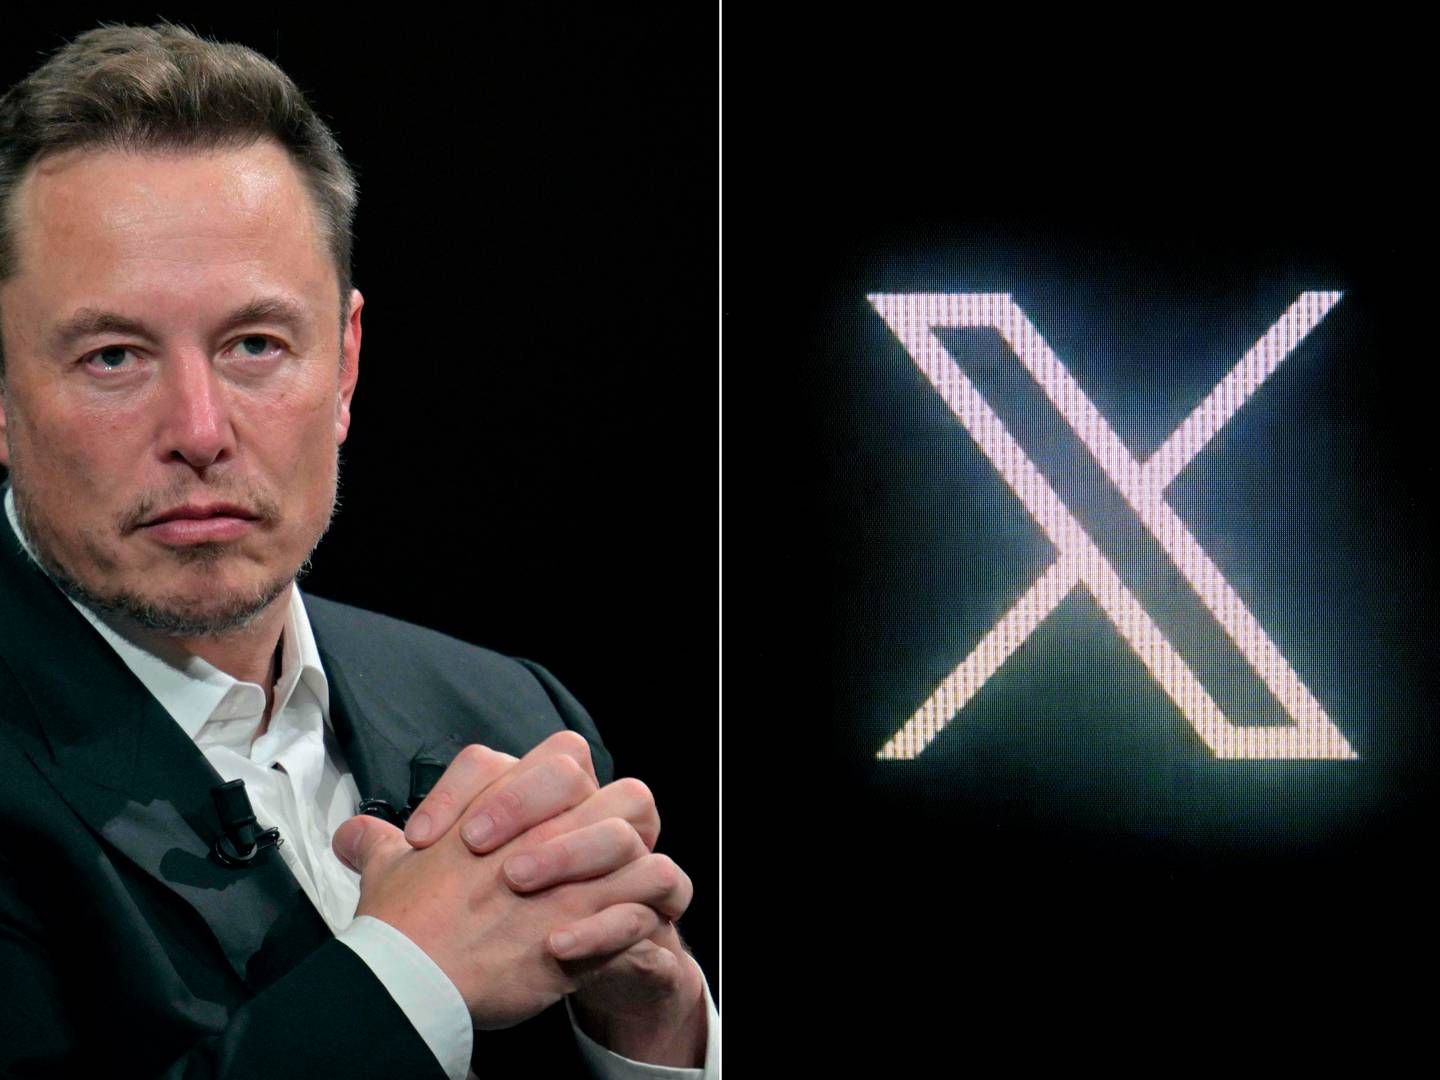 Elon Musk får kritik for sikkerheden på X i forbindelse med konflikten mellem Israel og Hamas. | Foto: Alain Jocard